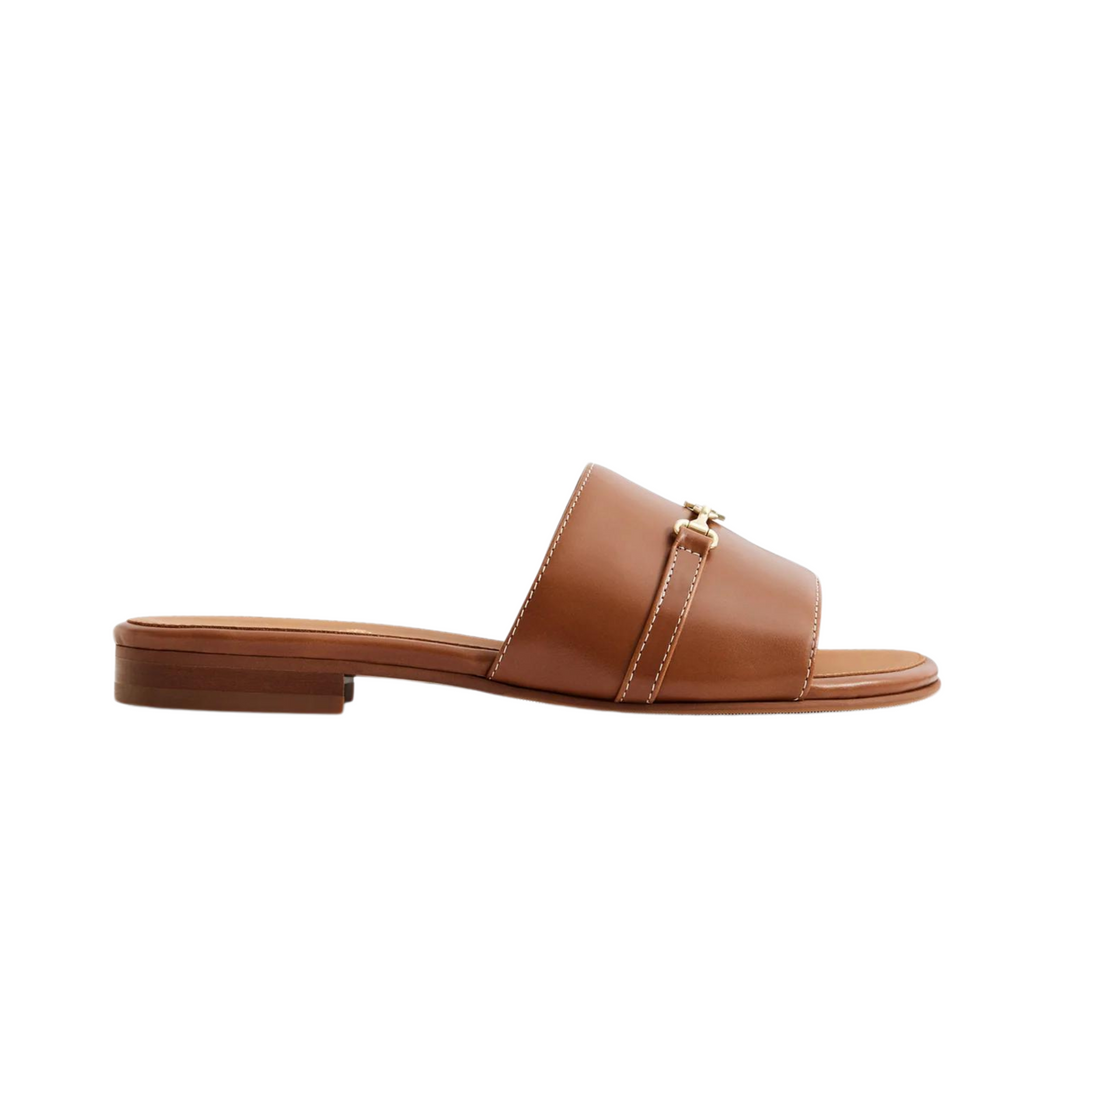 Heacham Sandal Tan Leather